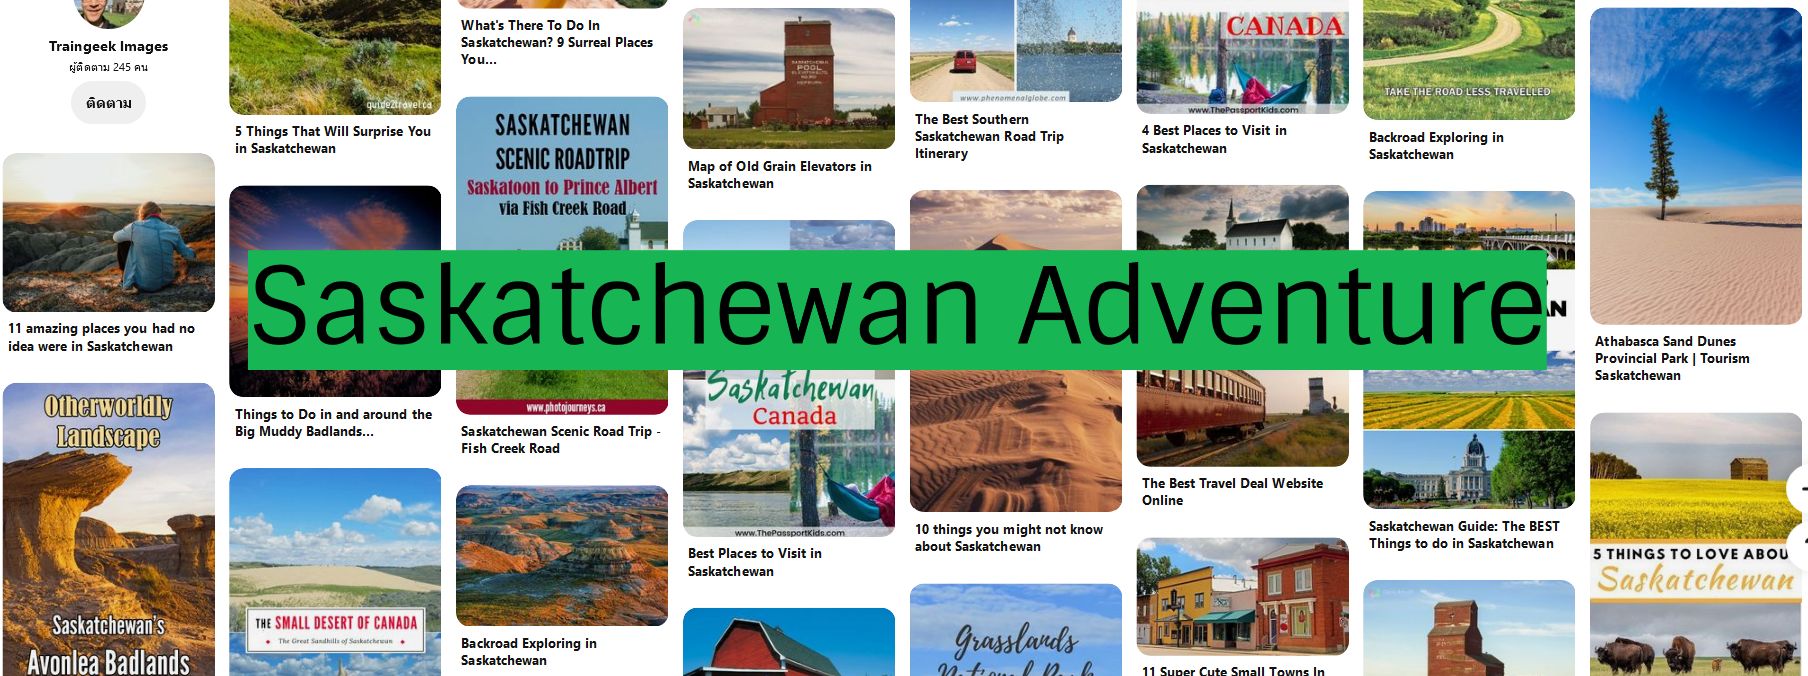 Saskatchewan Adventure